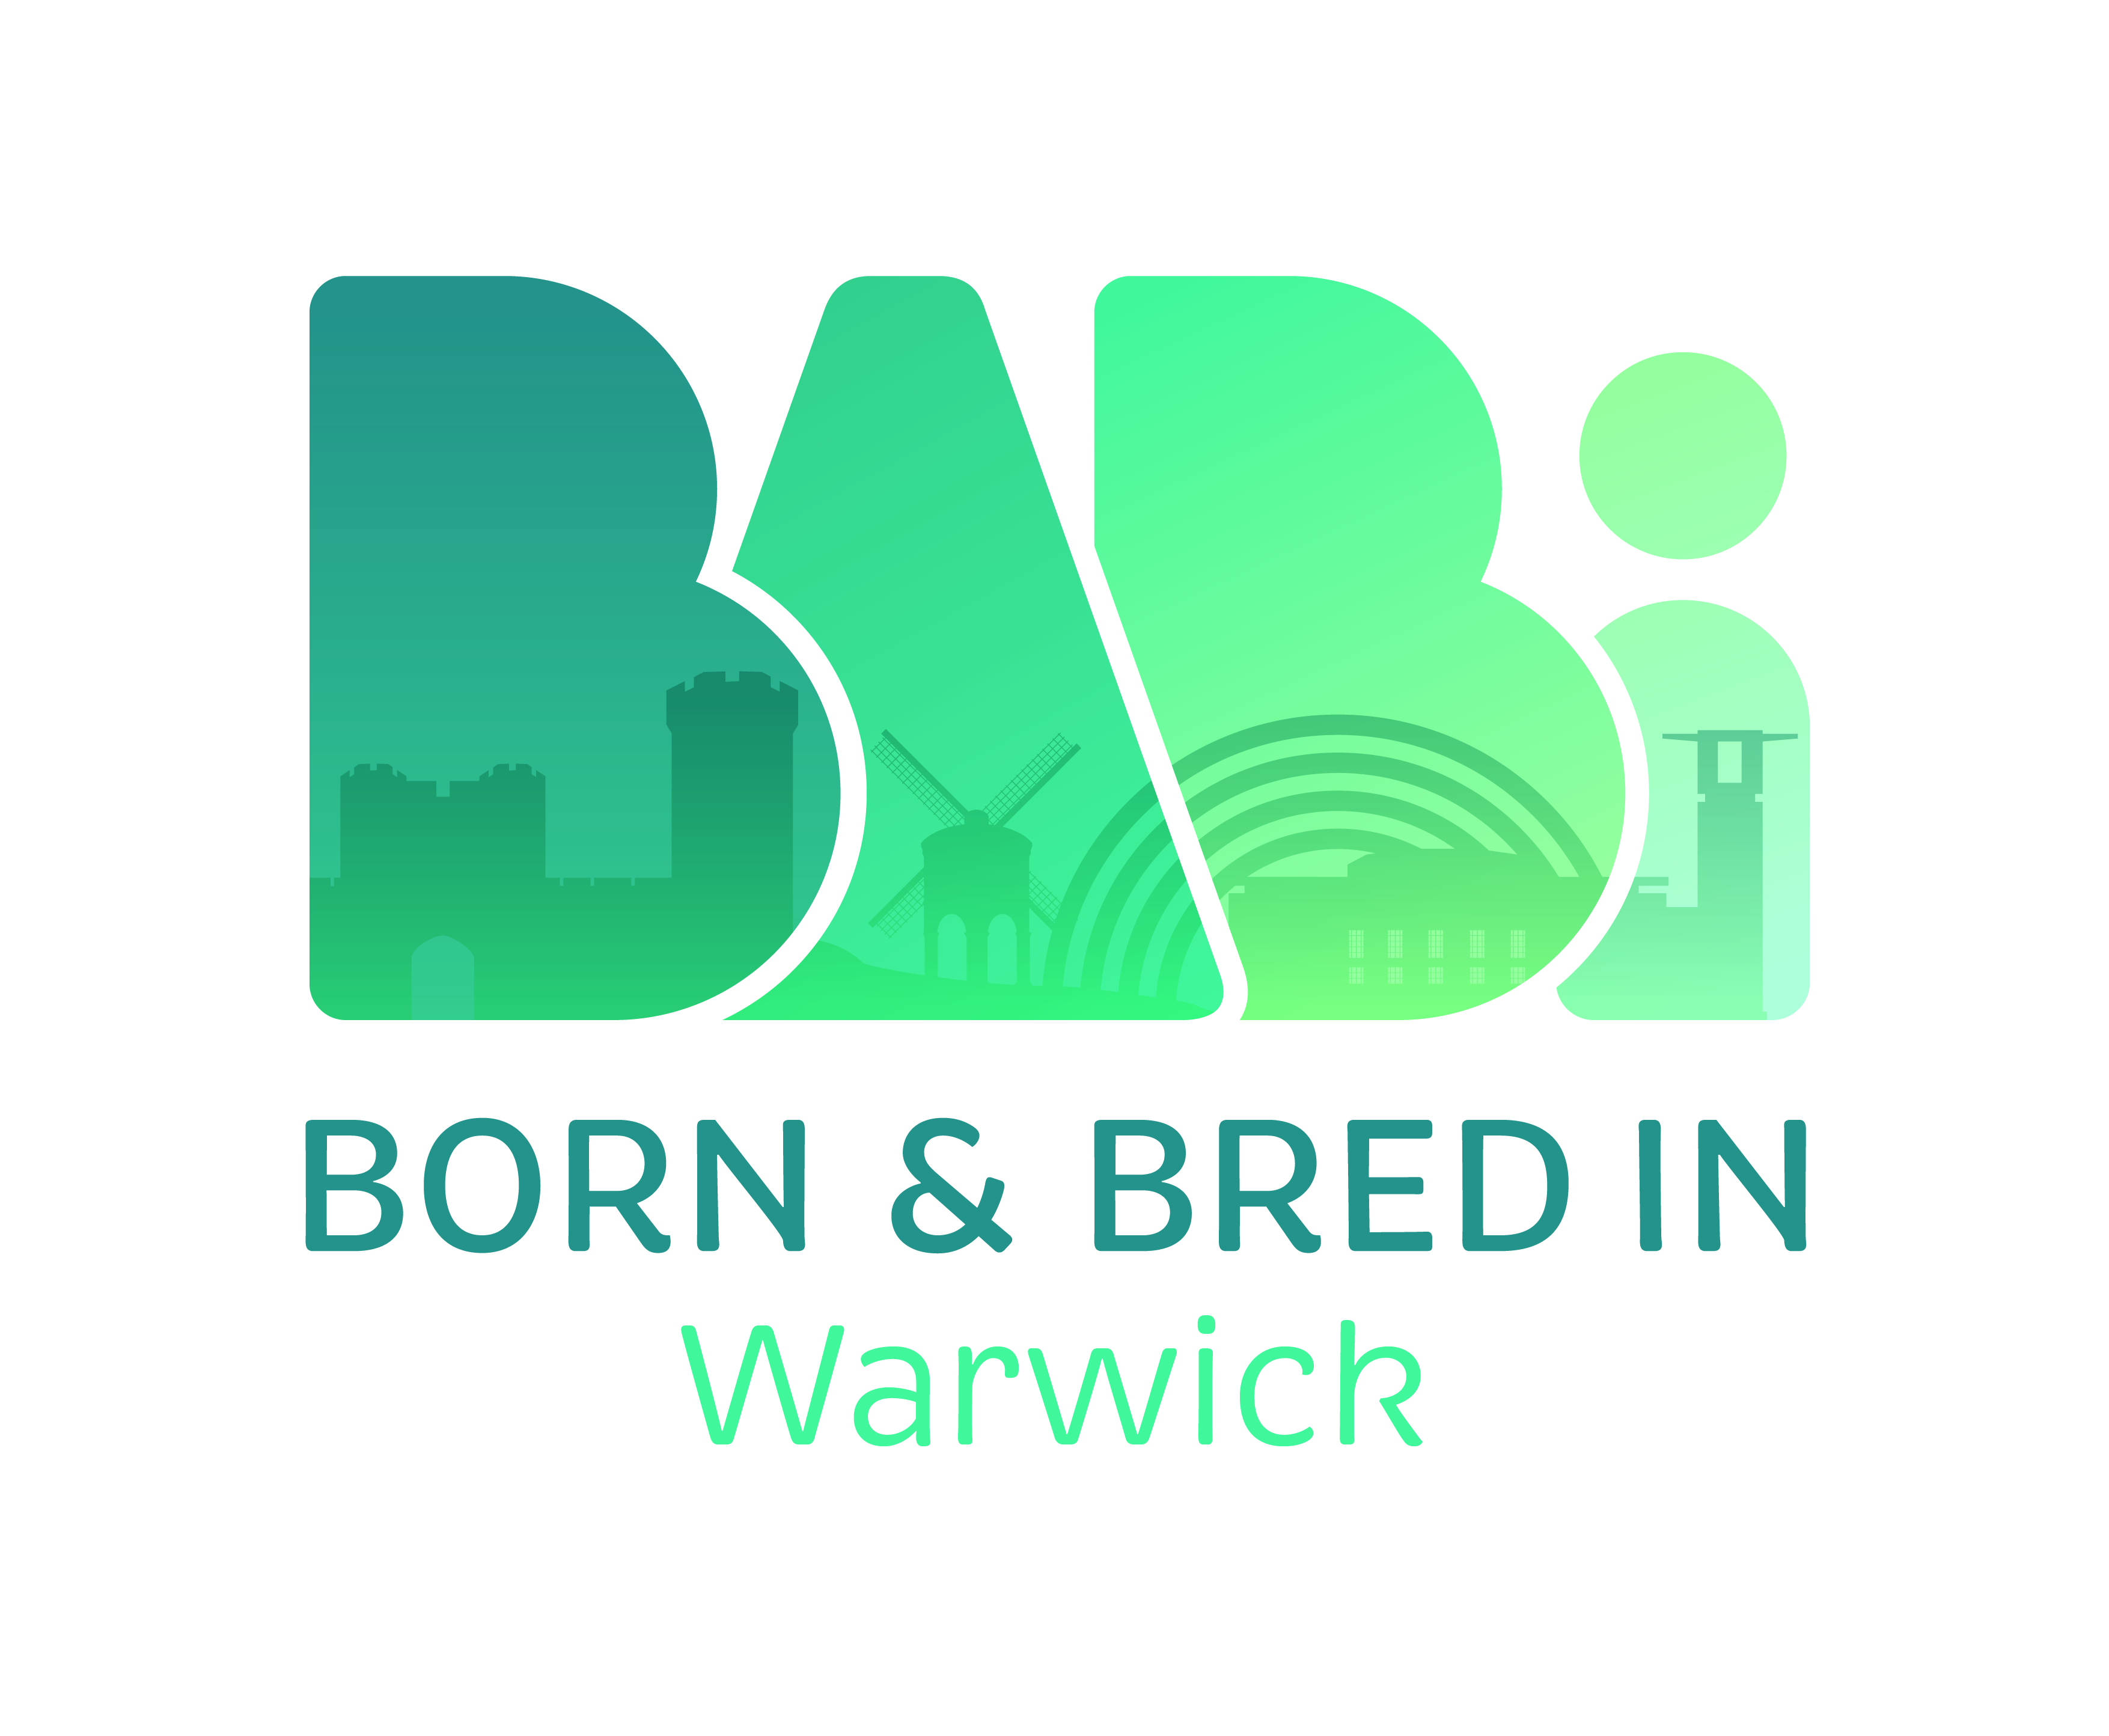 BaBi_Warwick_Logo-01.jpg